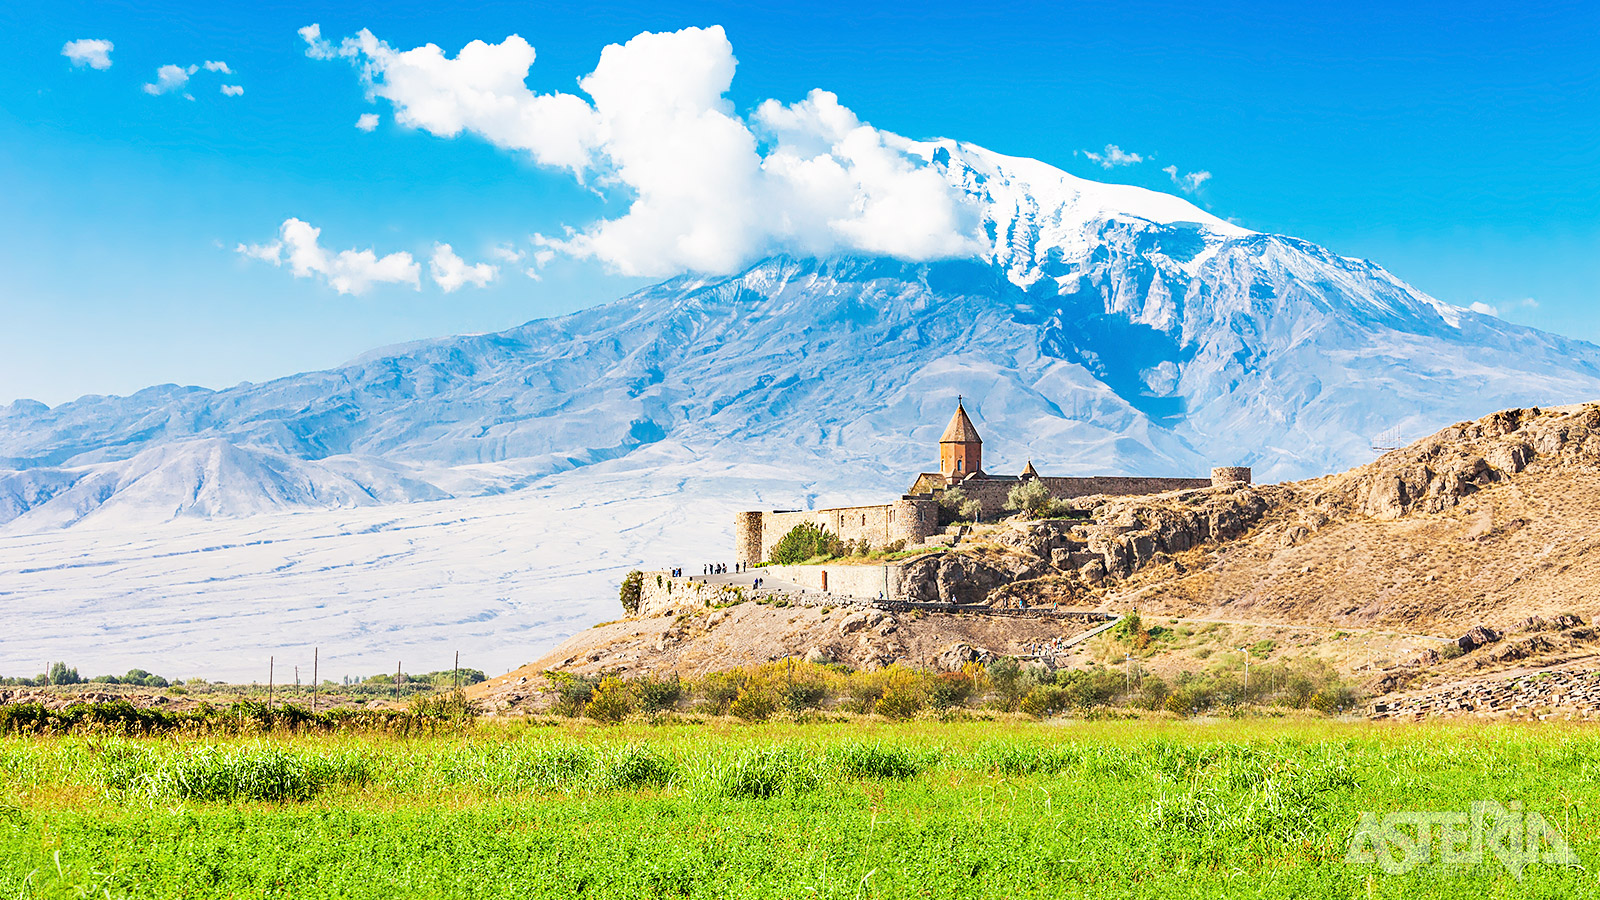 Vanuit Khor Virap heb je een mooi zicht op de Araratberg, de heilige berg voor de Armeniërs die in het huidige Turkije ligt